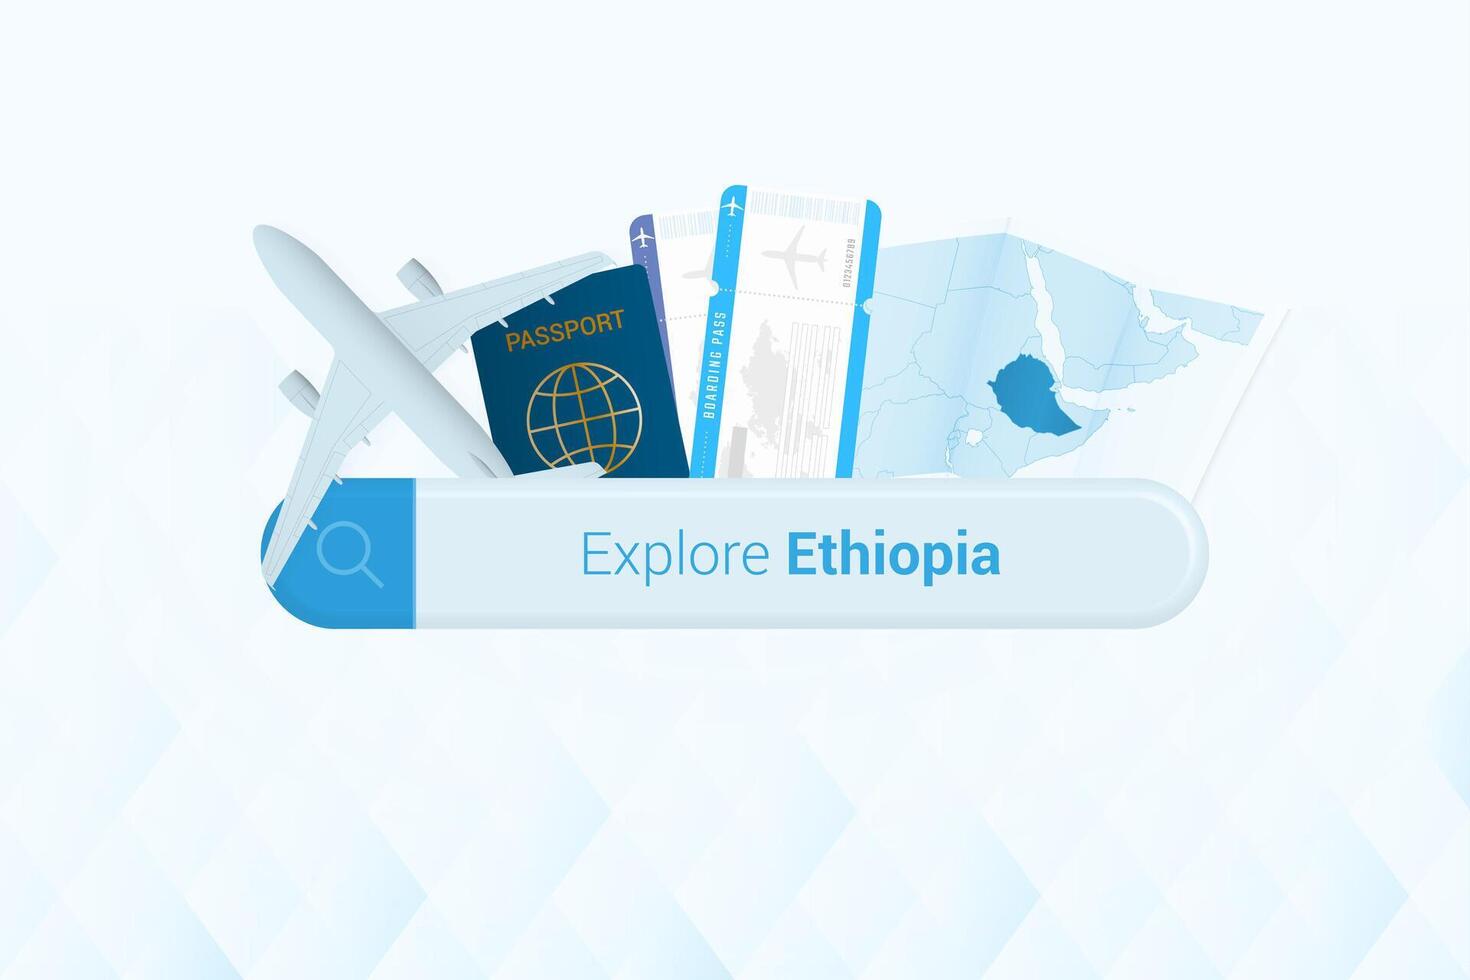 buscando Entradas a Etiopía o viaje destino en Etiopía. buscando bar con avión, pasaporte, embarque aprobar, Entradas y mapa. vector